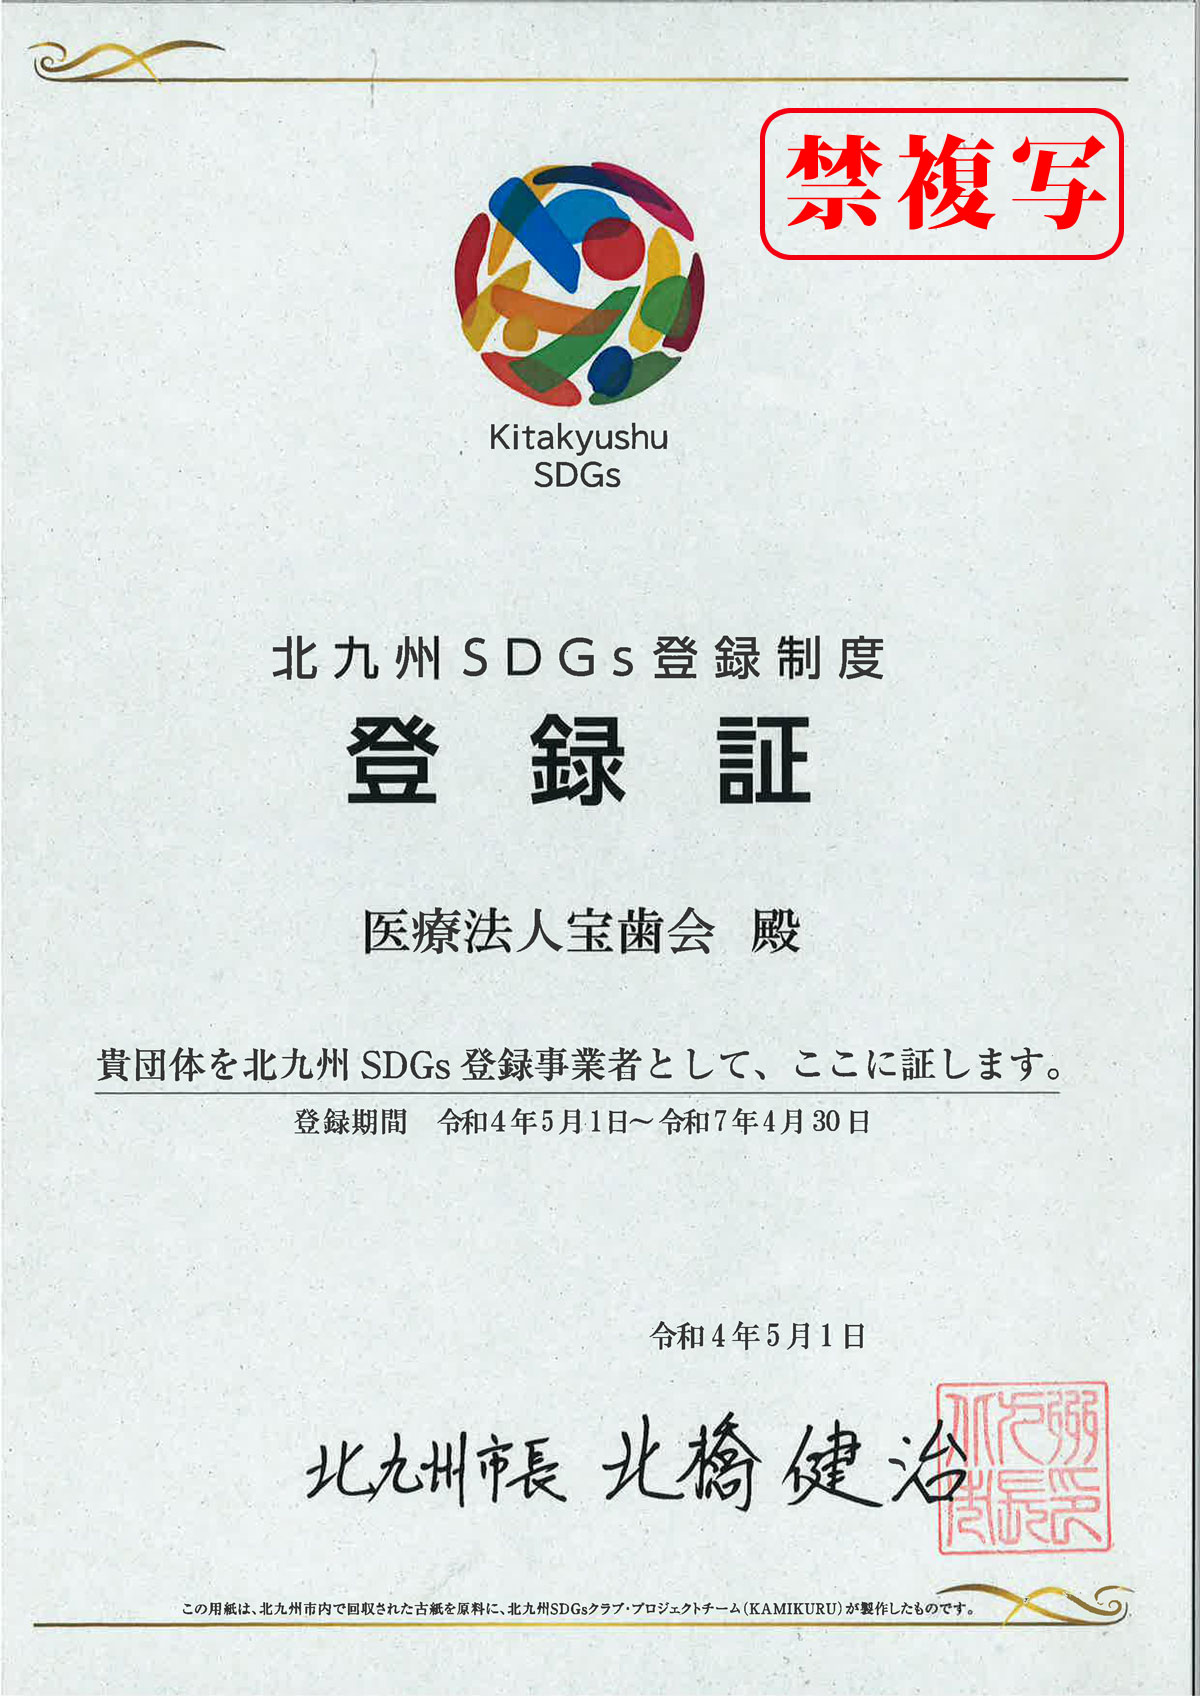 医療法人宝歯会が北九州SDGs登録事業者に認定されました。